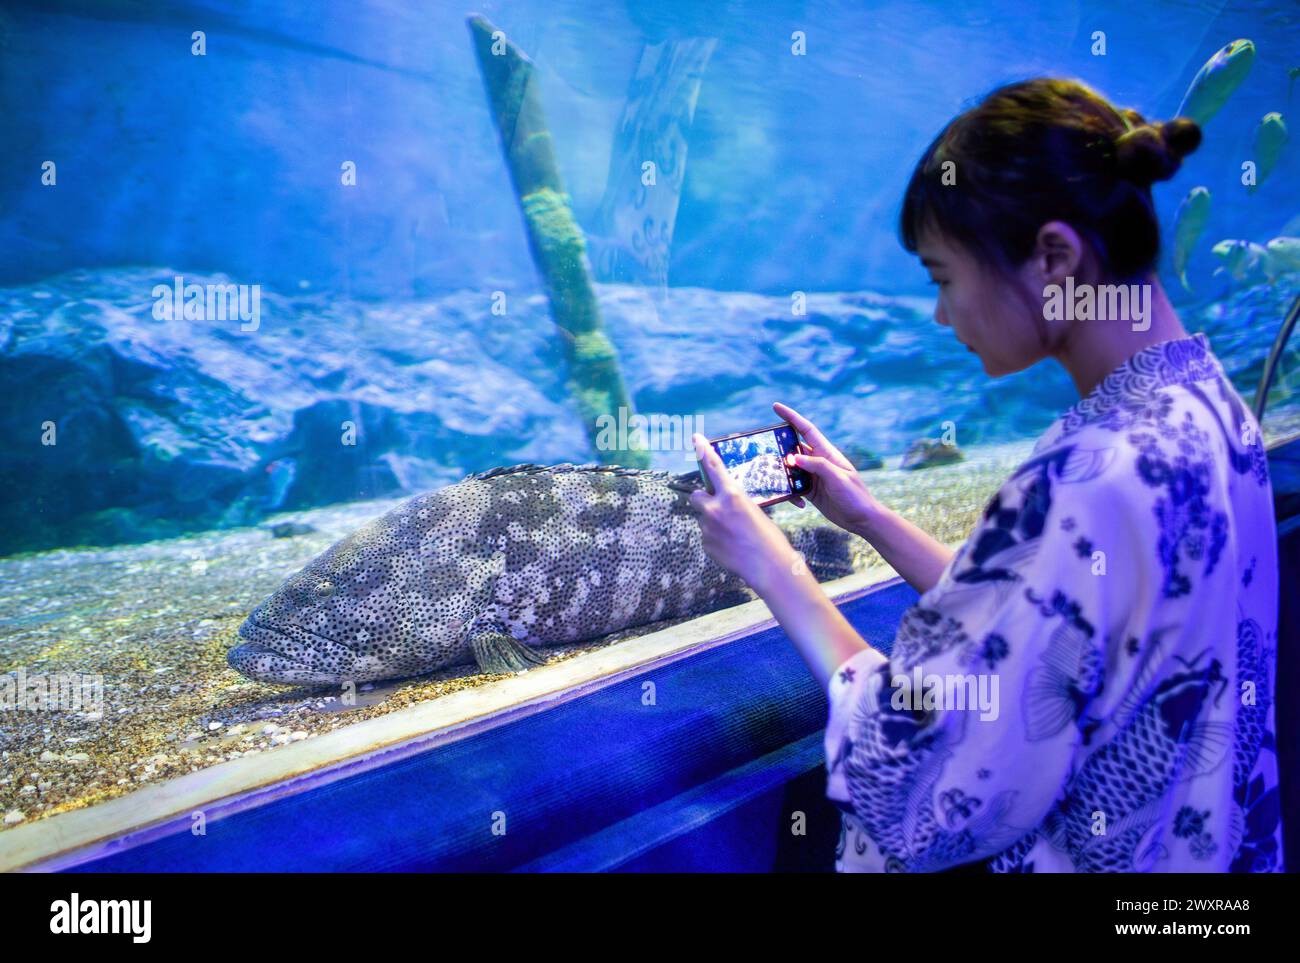 Un visitante toma una foto de un pez en el zoológico acuario de Chiang Mai, en Chiang Mai. El acuario del zoológico de Chiang Mai hay un túnel subterráneo en el edificio que es un túnel de agua dulce y un túnel de mar y está conectado entre sí por camino de auto-caminar y es el más largo en el sudeste de Asia y la longitud total es de 133 metros. La longitud del túnel de mar es de 66,5 metros y el túnel de agua dulce es de 66,5 metros. El acuario zoológico de Chiang Mai reabrió sus puertas a los turistas el 1 de abril después de más de un año de renovación, se realizó una inversión de casi 30 millones de baht para reformar tanto el exterior como el interior del edificio. El Foto de stock